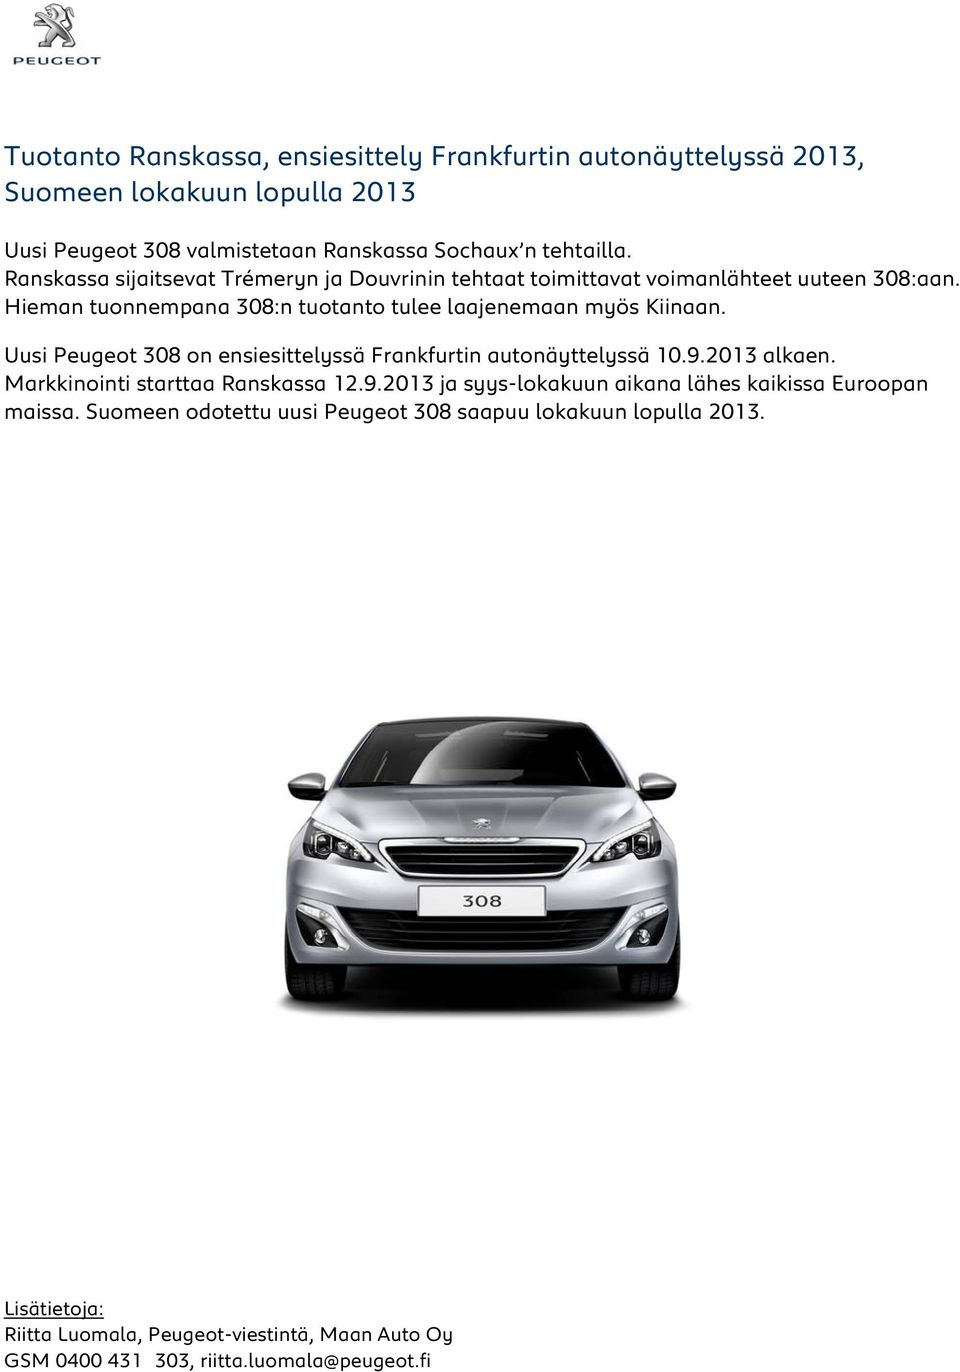 Uusi Peugeot 308 on ensiesittelyssä Frankfurtin autonäyttelyssä 10.9.2013 alkaen. Markkinointi starttaa Ranskassa 12.9.2013 ja syys-lokakuun aikana lähes kaikissa Euroopan maissa.